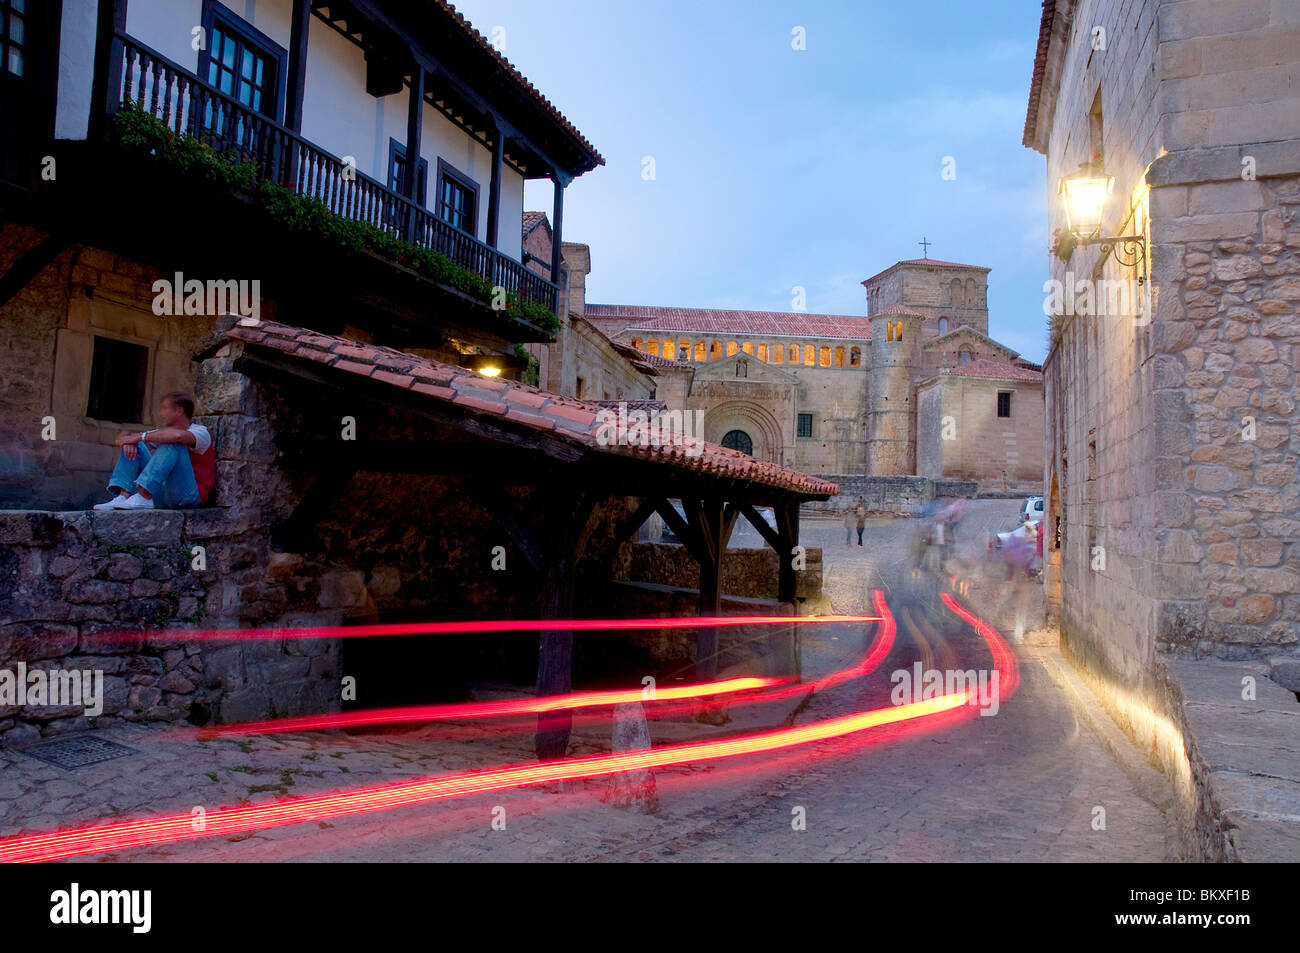 Street y la colegiata, vista nocturna. Santillana del Mar, provincia de Cantabria, España. Foto de stock